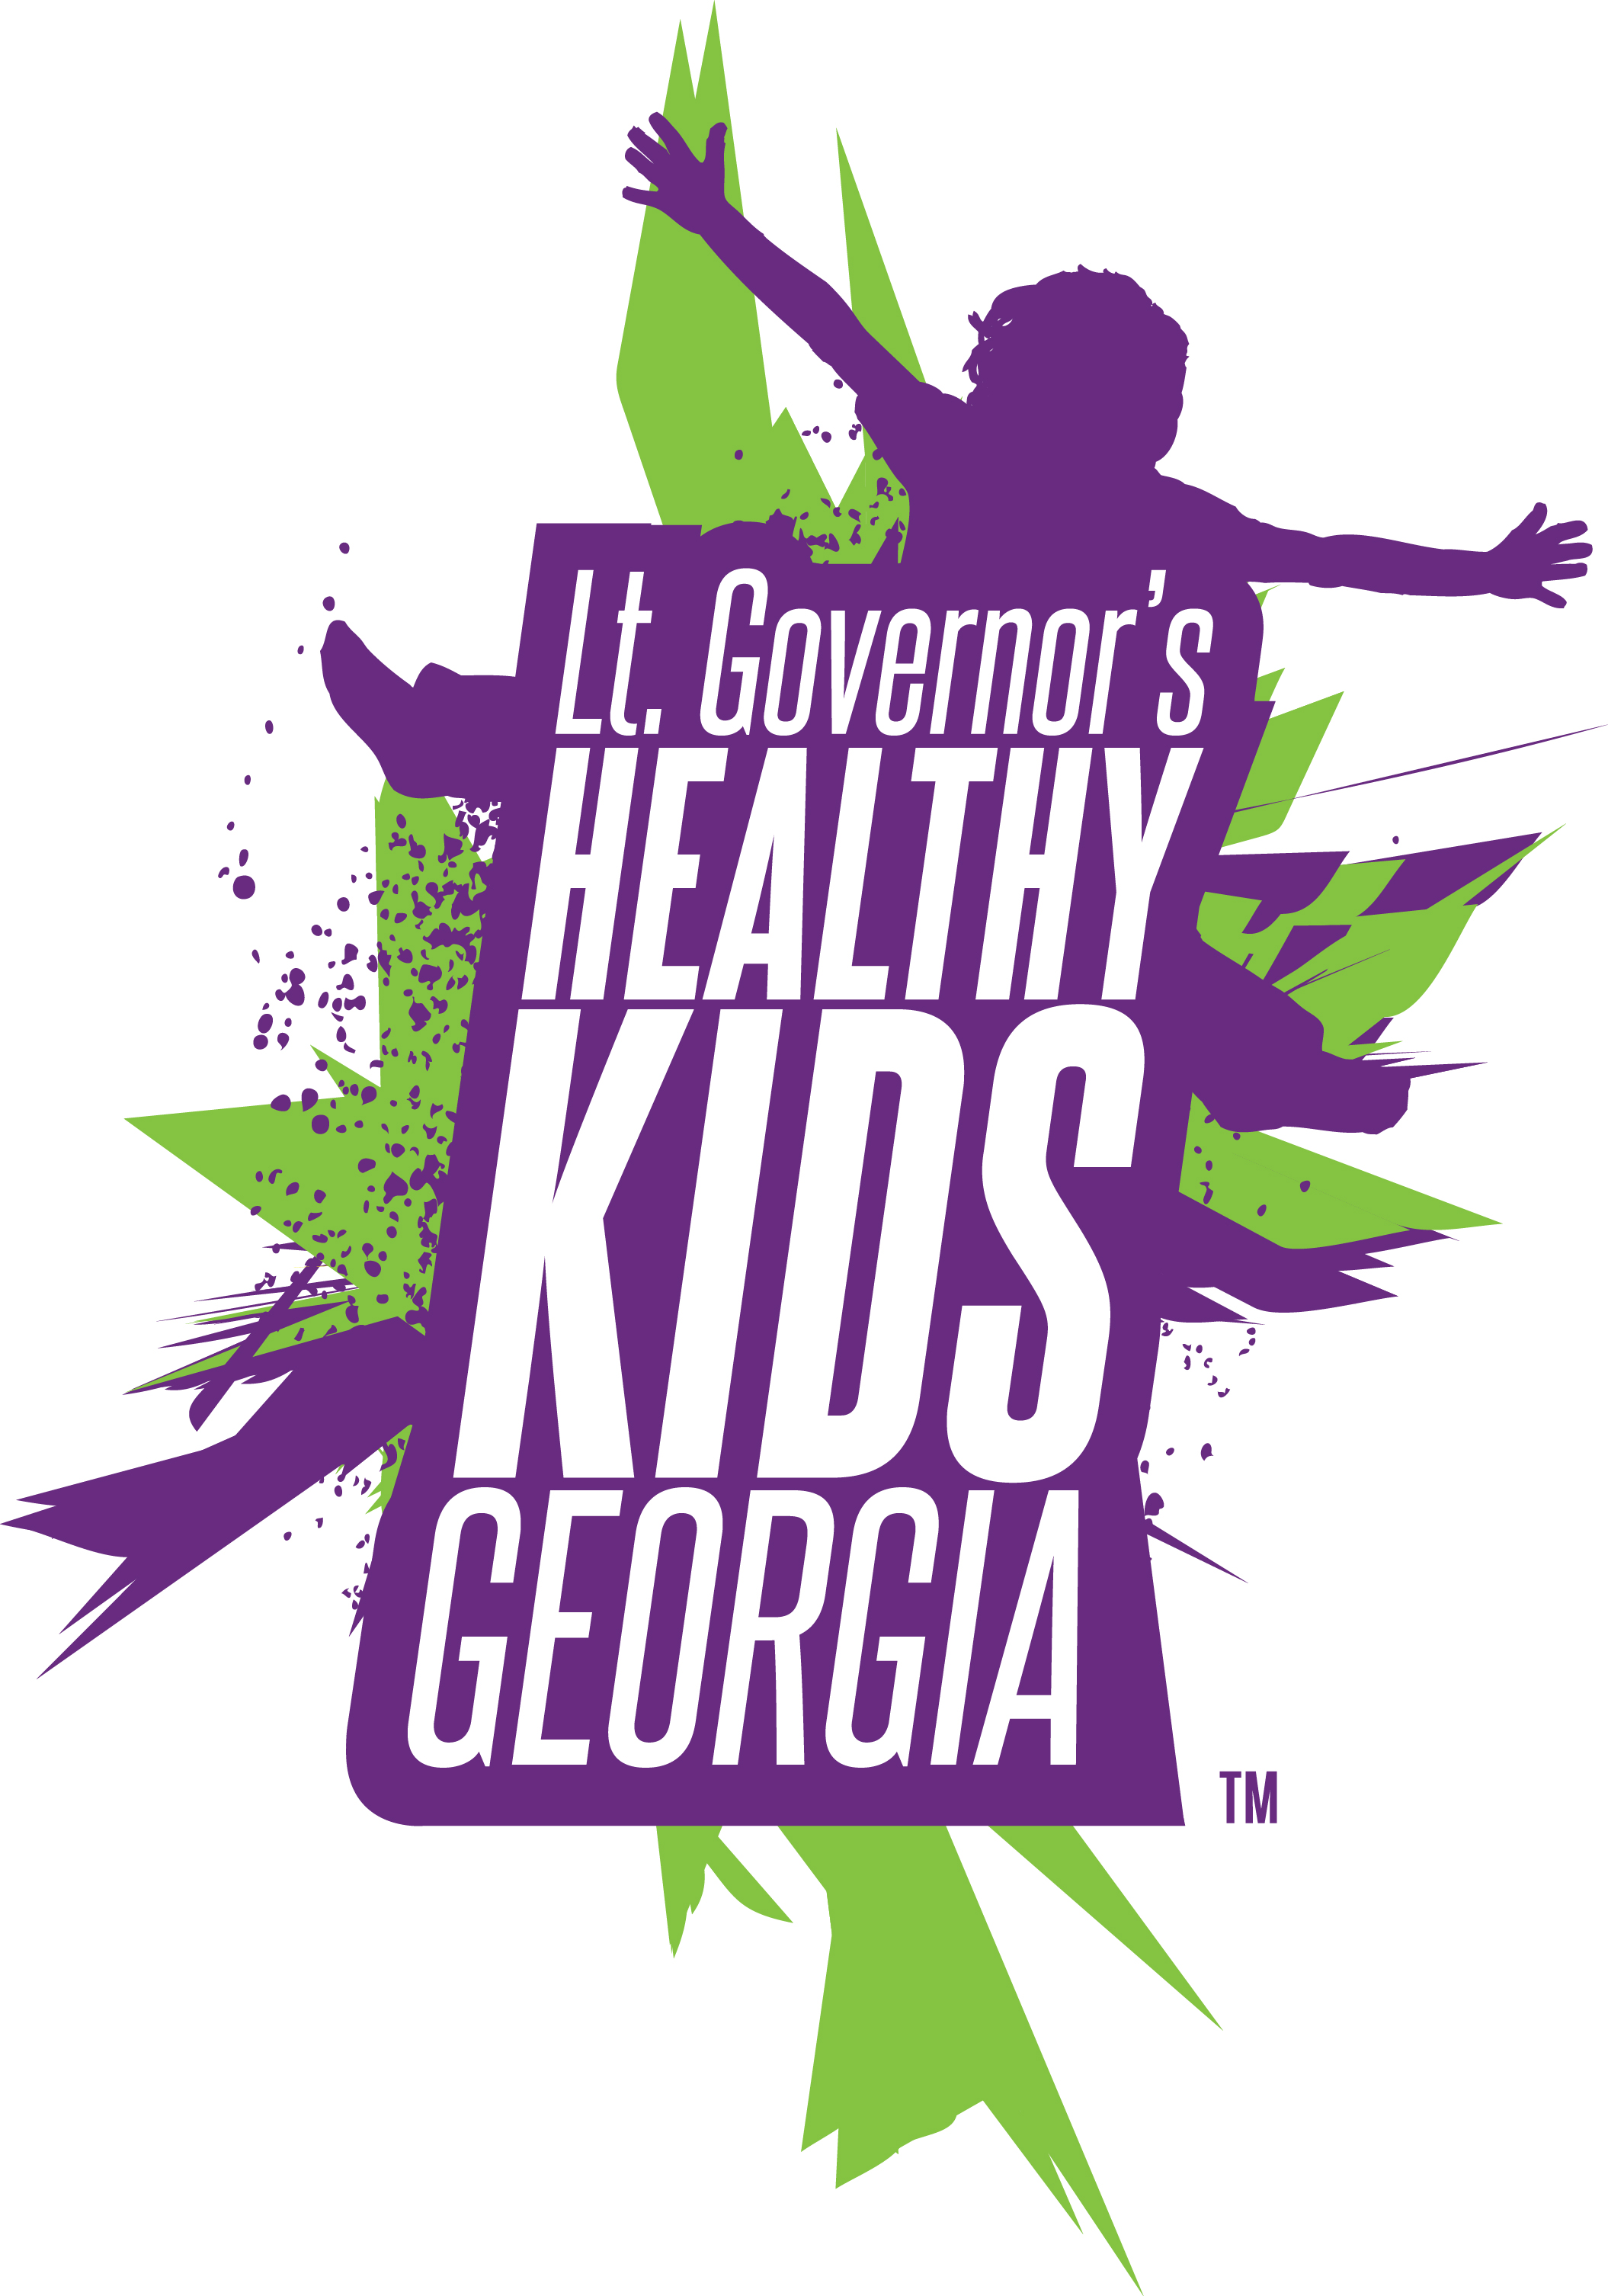 Lt. Governor's Healthy Kids Georgia logo